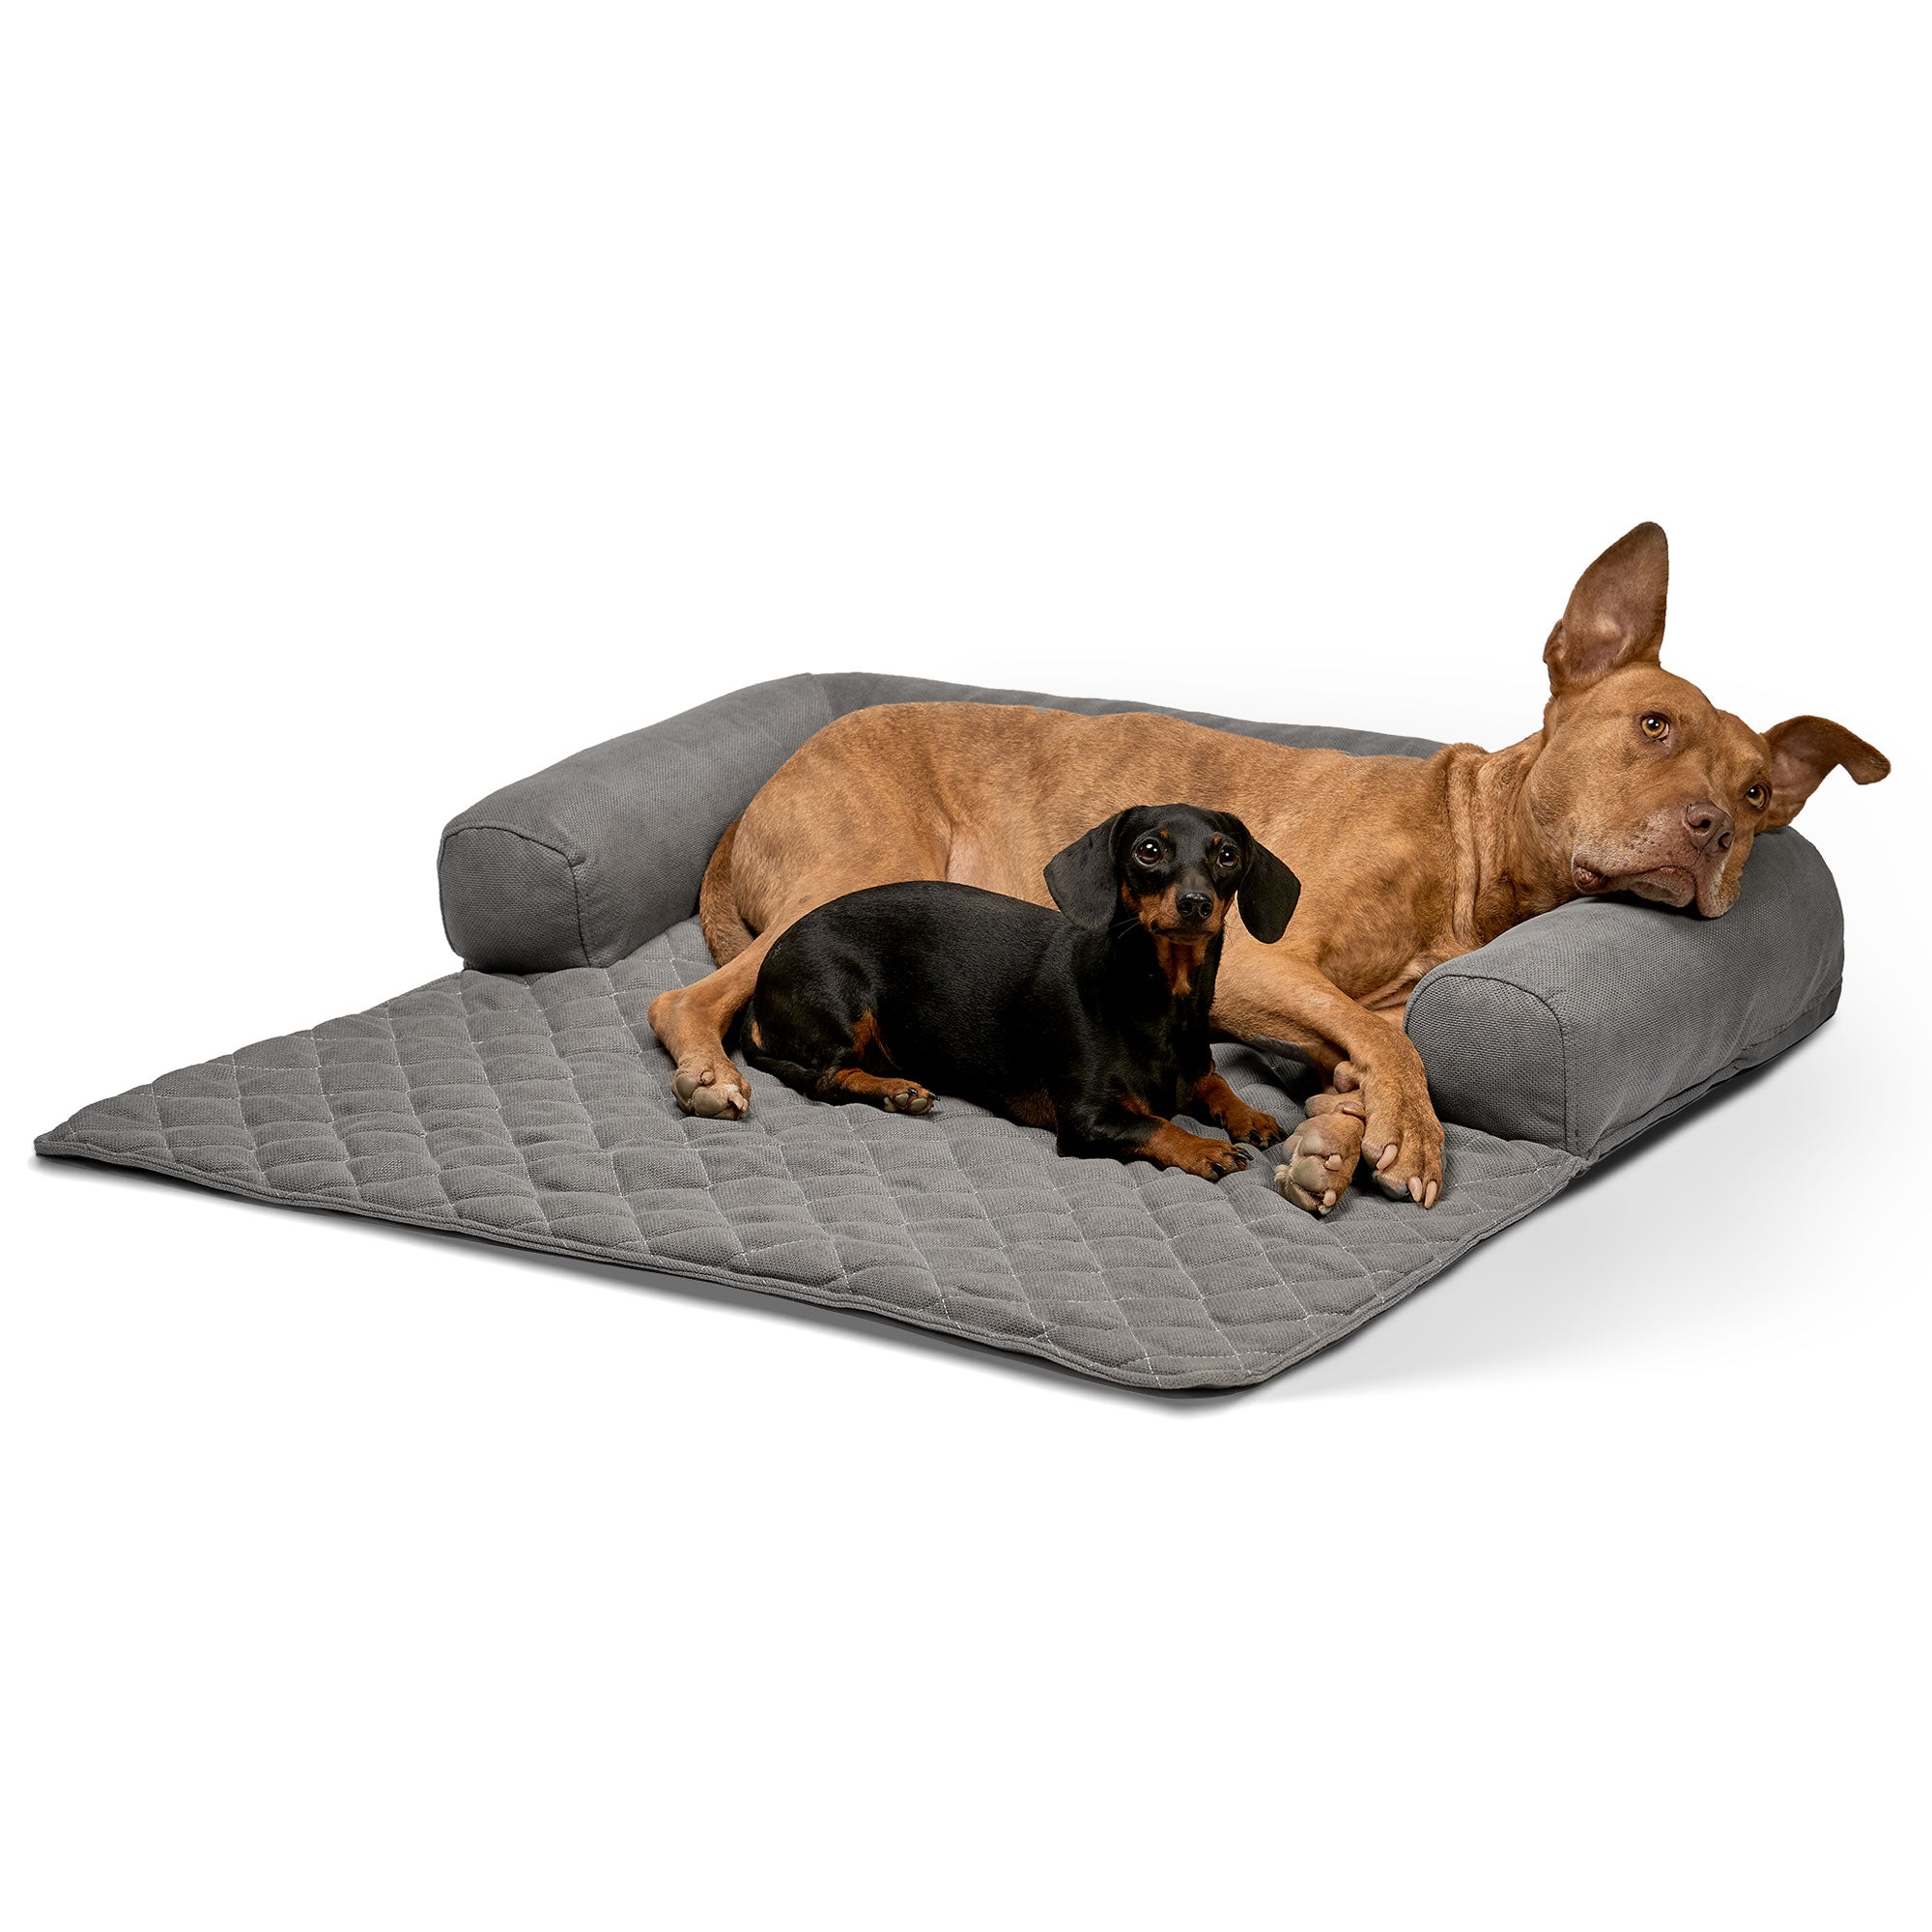 Lous exclusiver Sofaschutz Sofadecke mit Rand Hundedecke Hundebett fürs Sofa